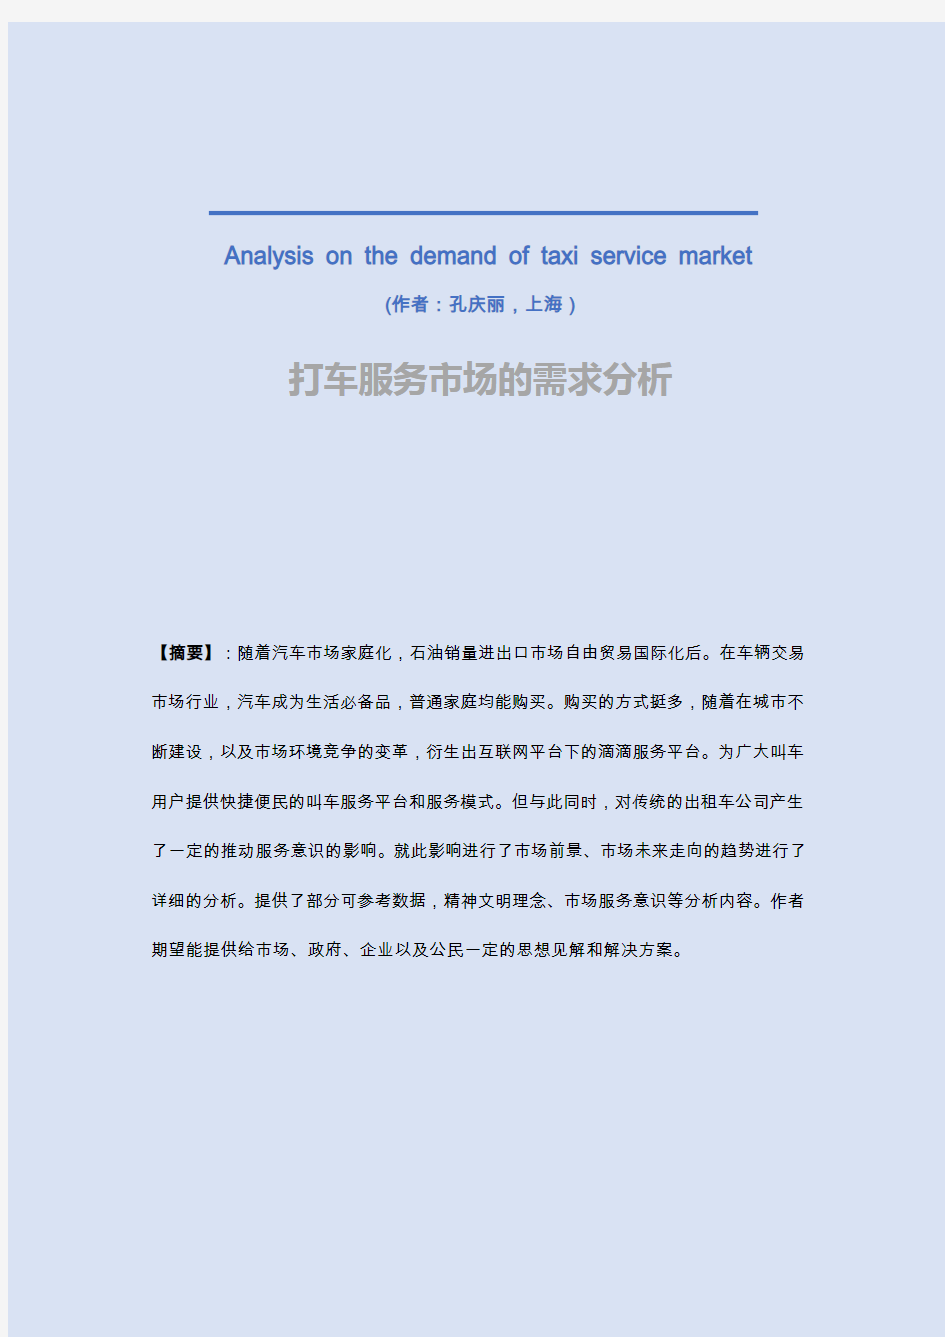 关于打车服务市场的需求分析(提案@孔庆丽)